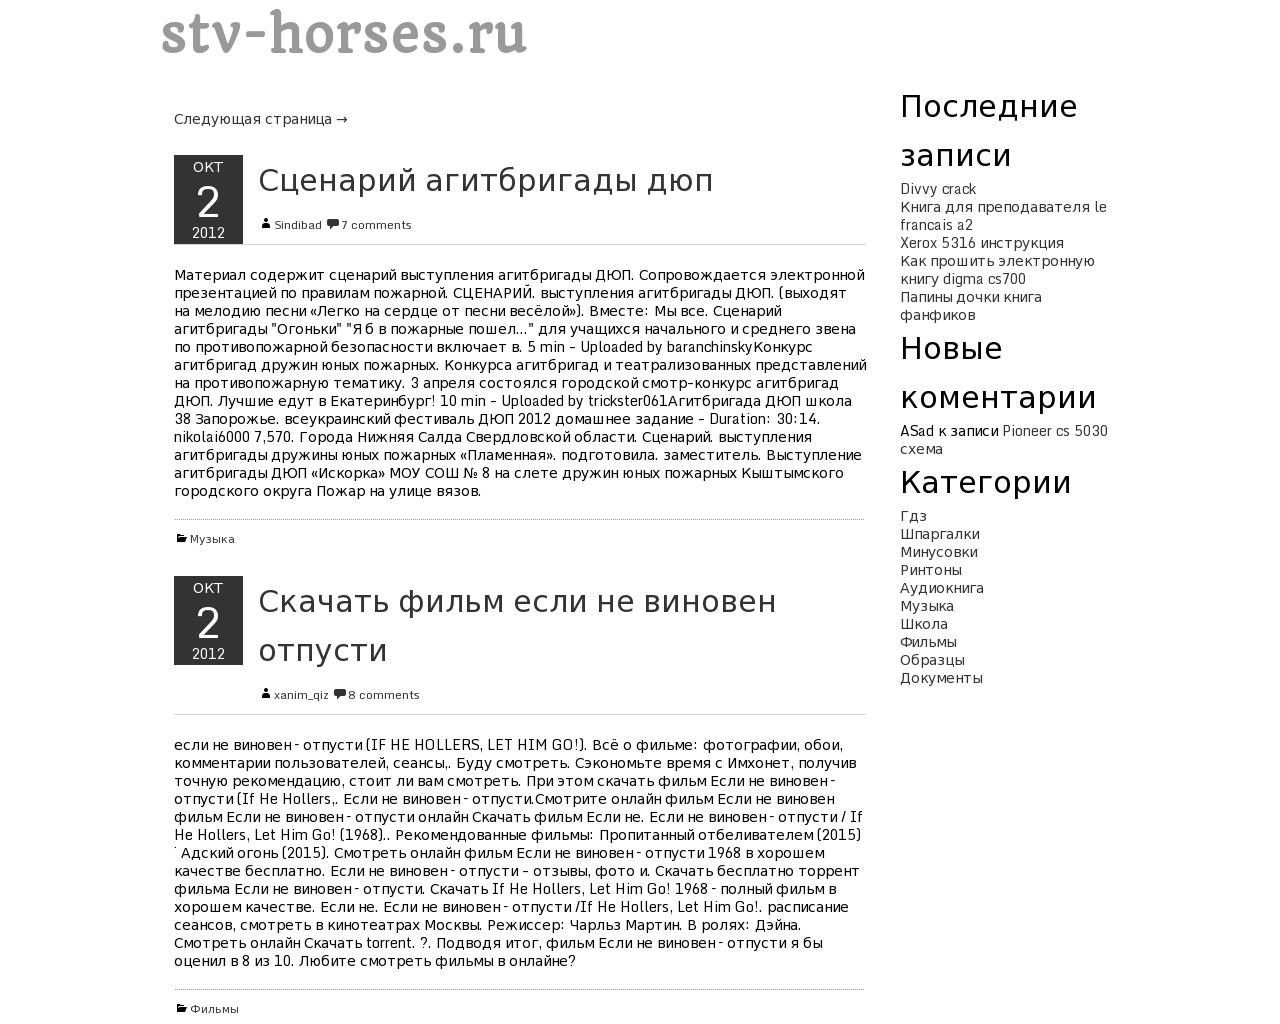 Изображение сайта stv-horses.ru в разрешении 1280x1024